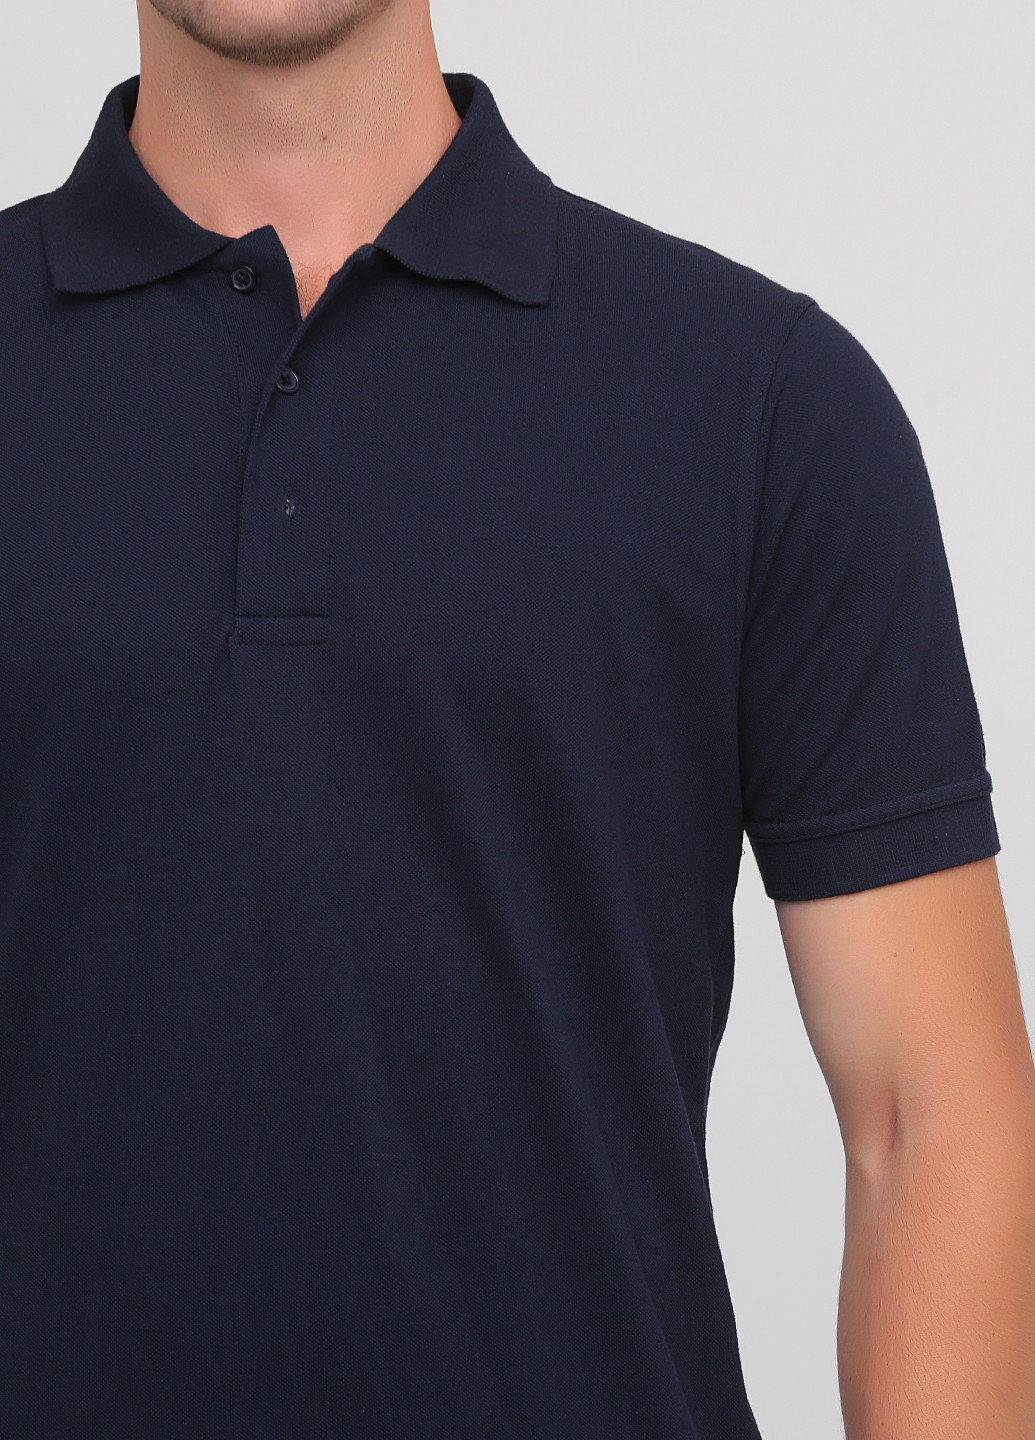 Темно-синяя футболка-футболка для мужчин Regatta однотонная